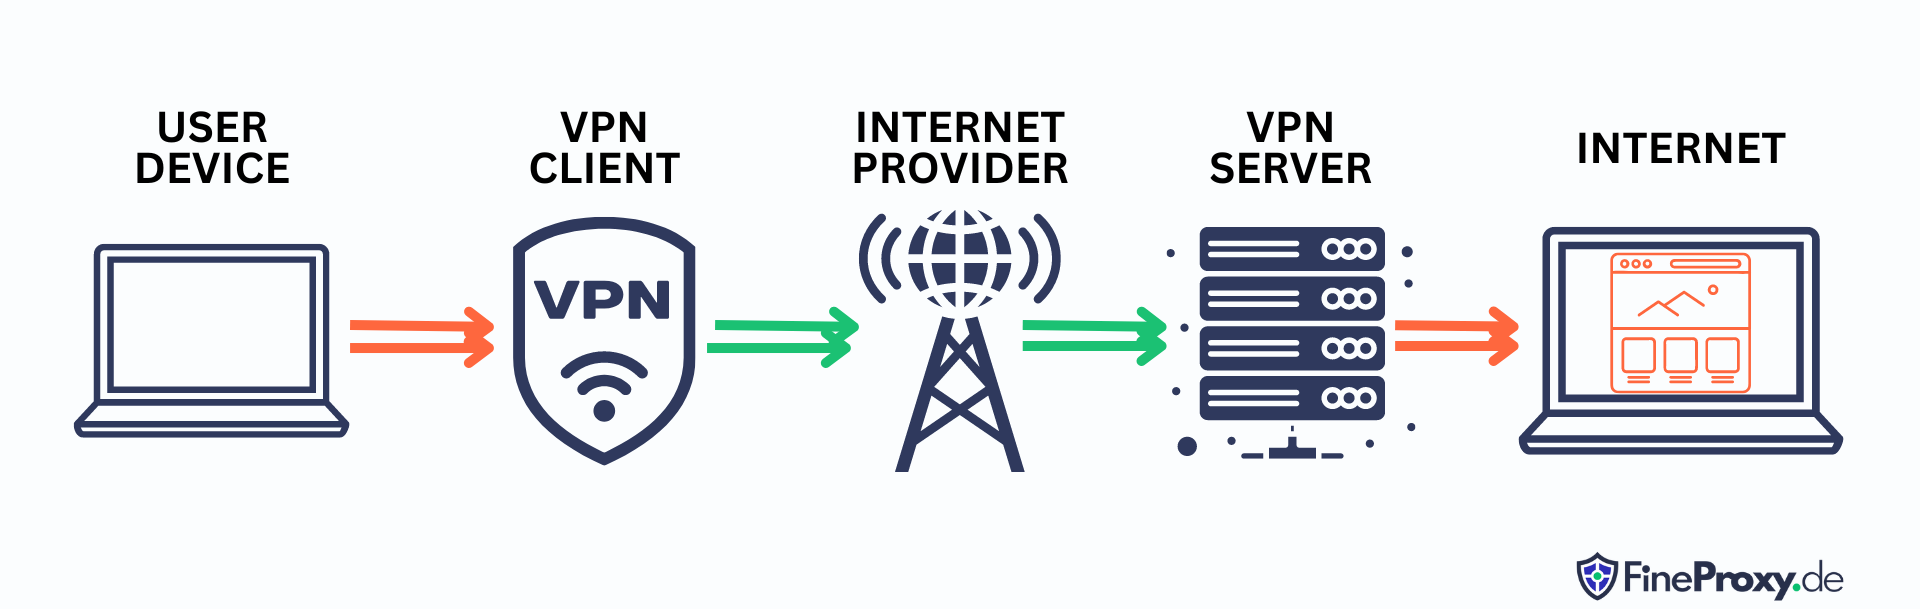 Dịch vụ VPN hoạt động như thế nào?